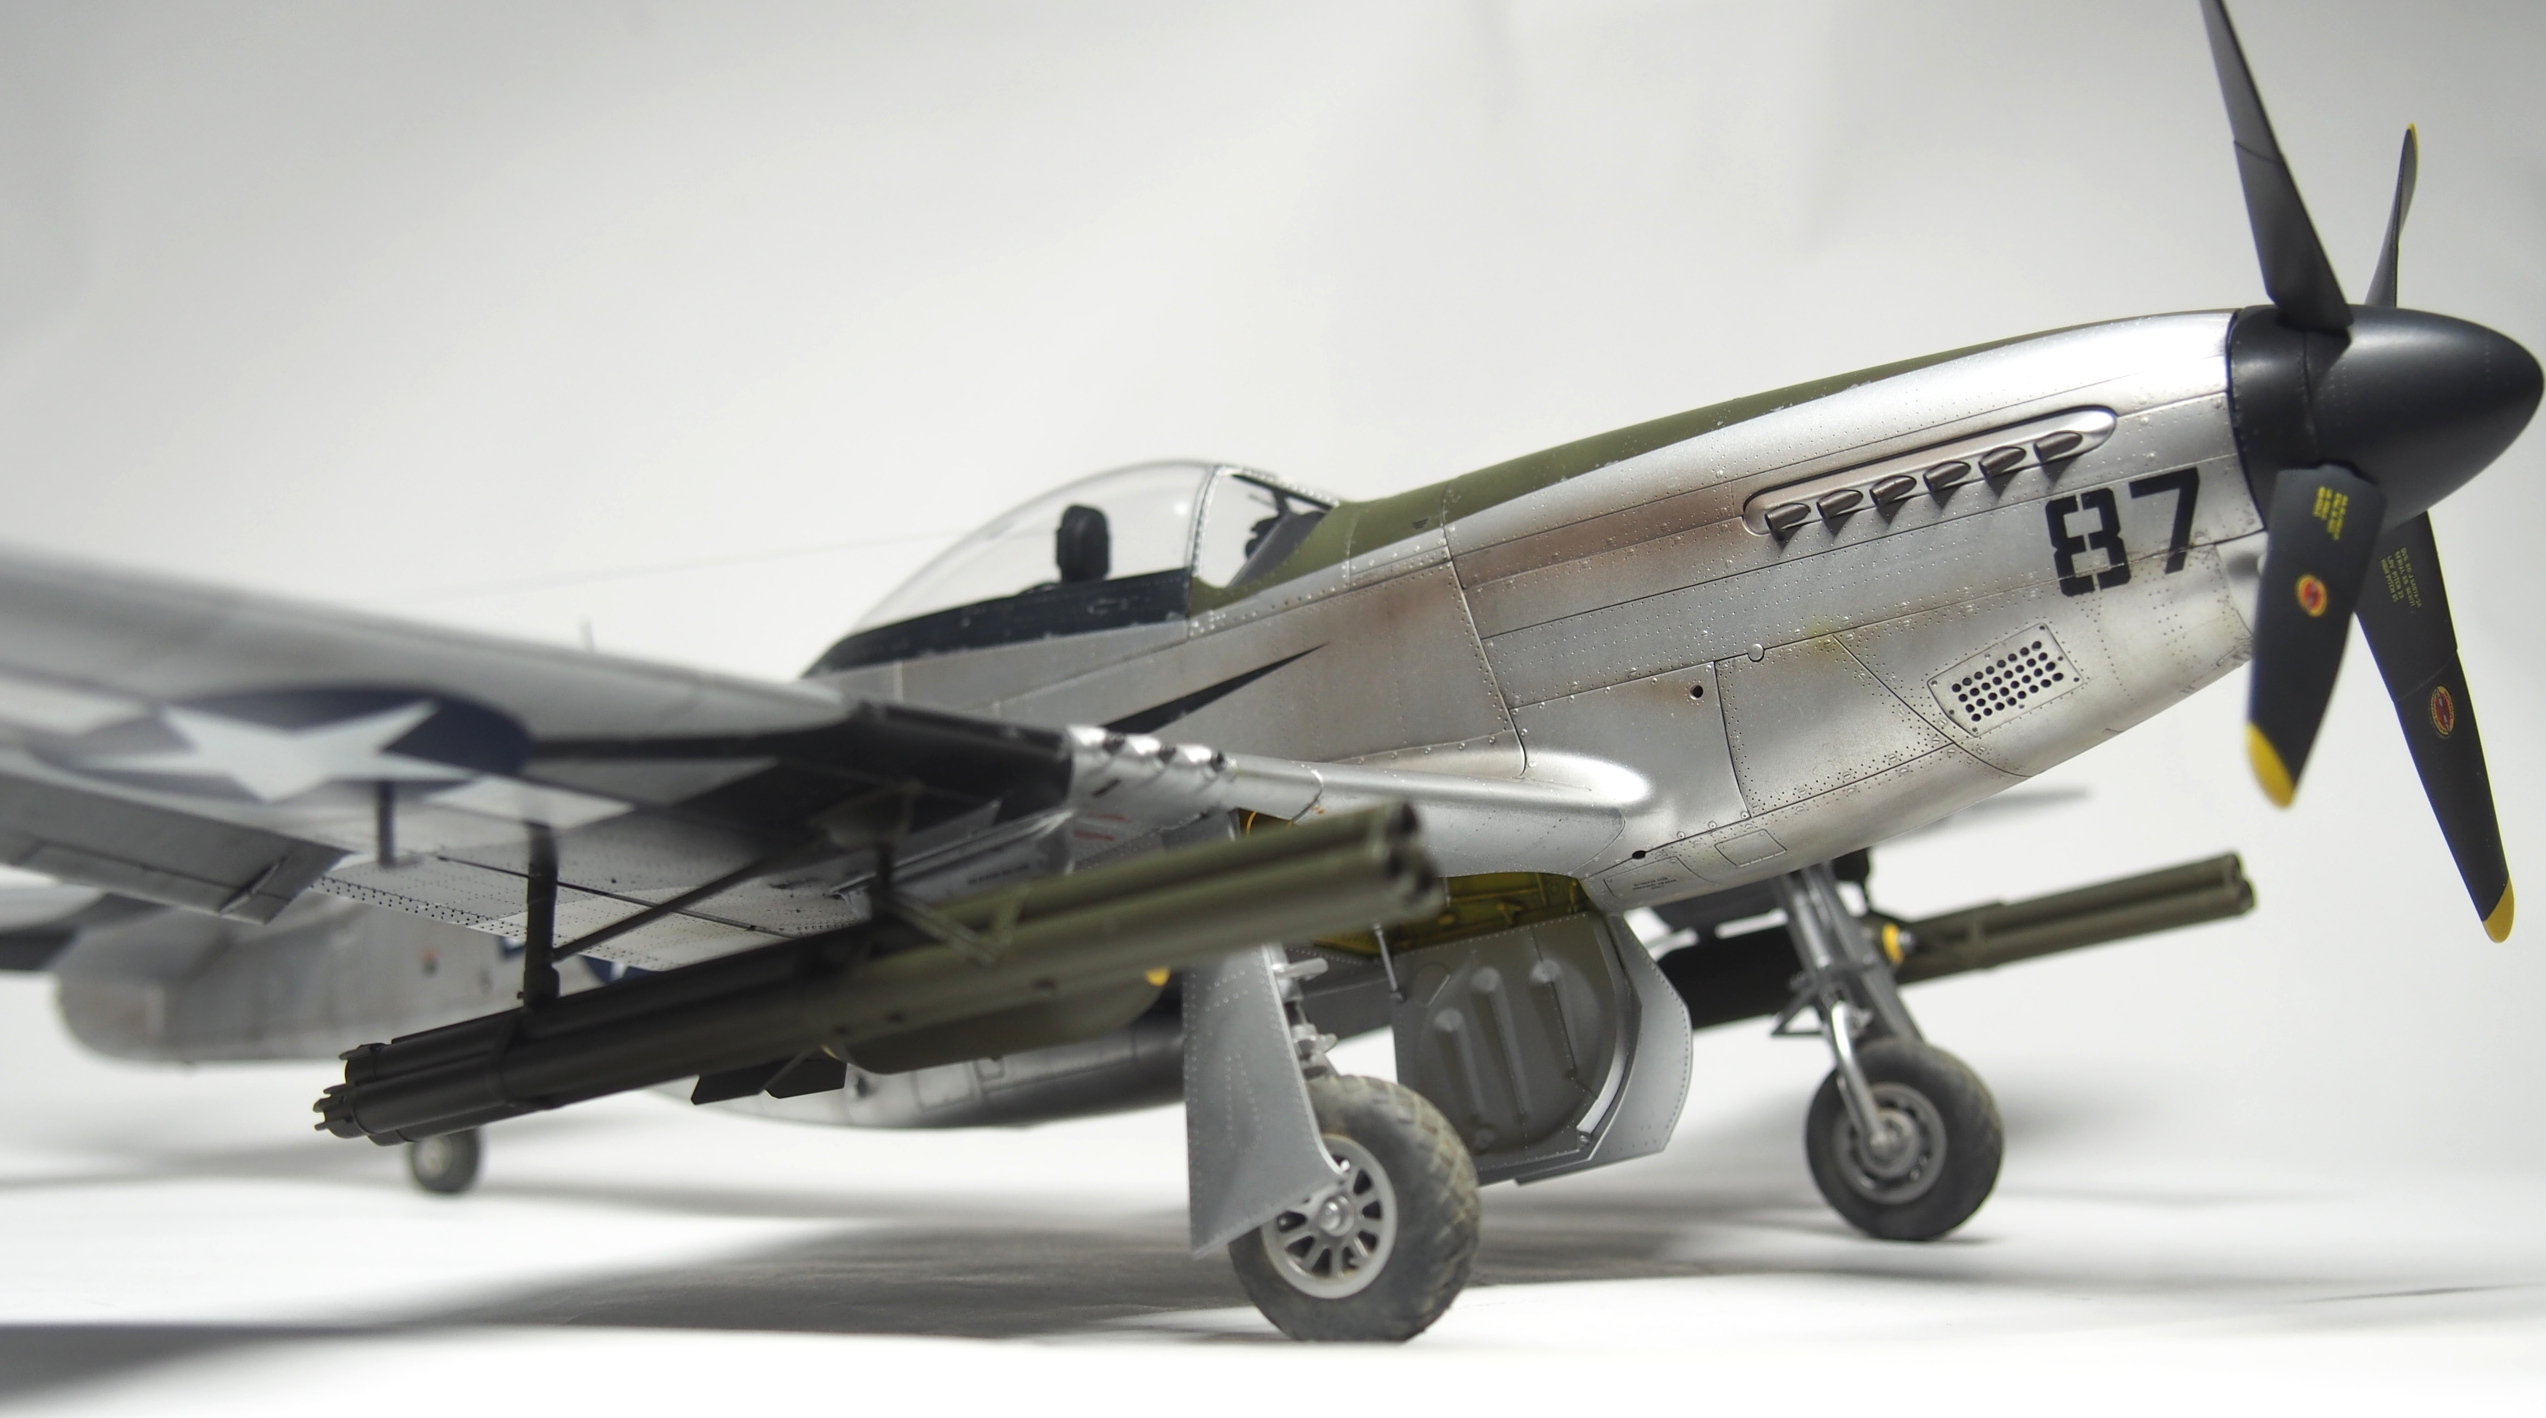 タミヤ 1/32 エアークラフトシリーズ ノースアメリカン P-51D/K 